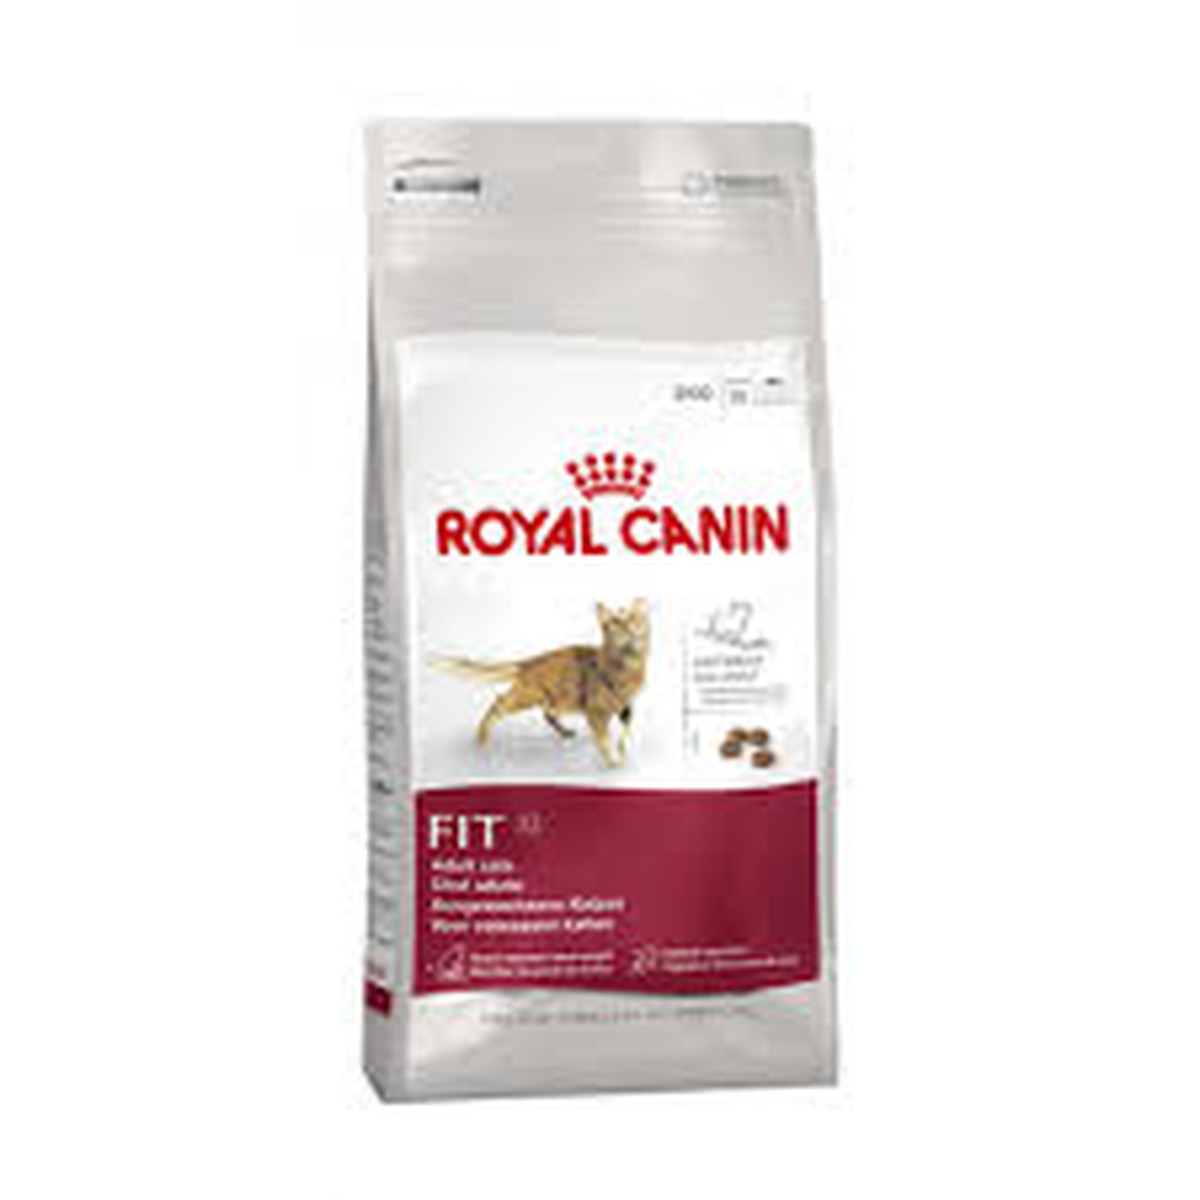 Royal Canin  Fit 4 kg  4 kg